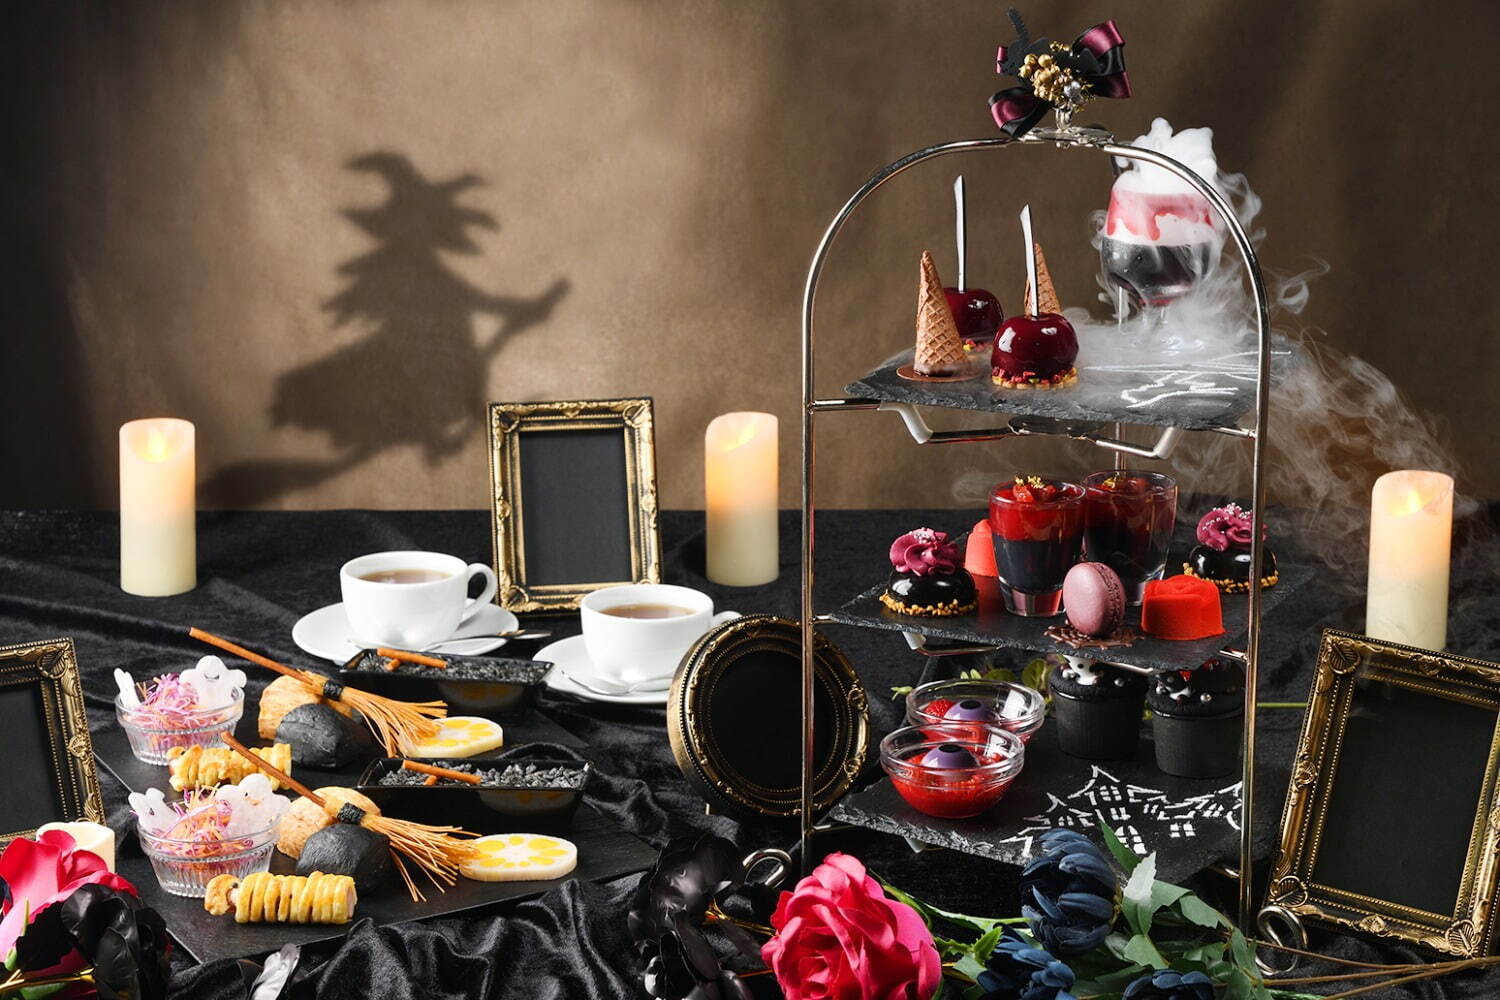 「Halloween Afternoon Tea ～魔女の宴へようこそ～」
アフタヌーンティー 5,000円/夜のスイーツハイティー 6,000円